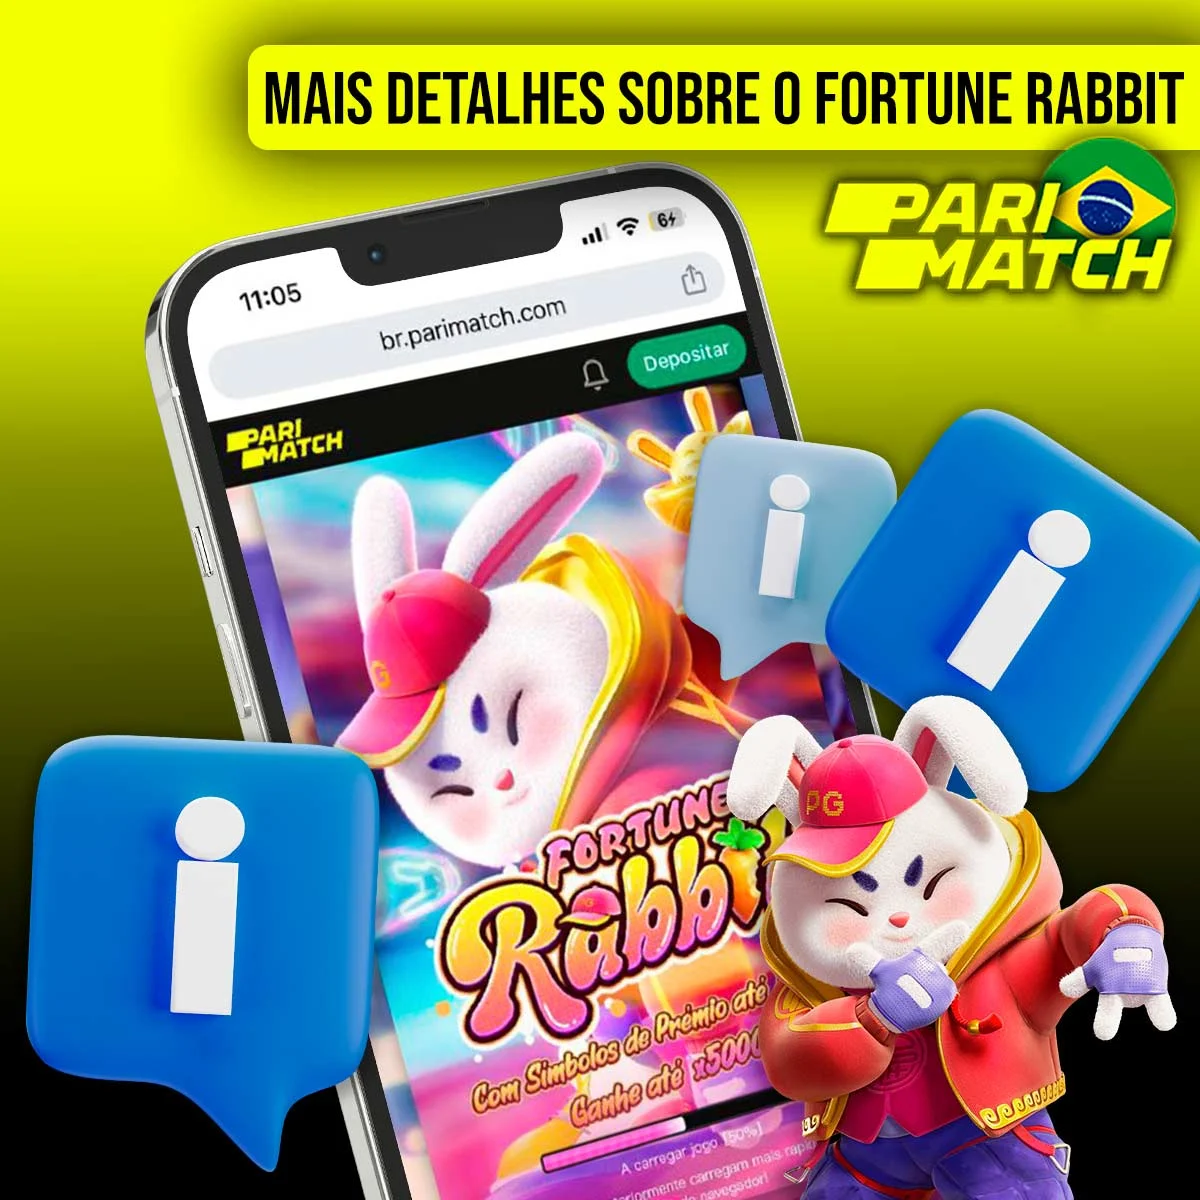 Mais informações sobre o Parimatch Fortune Rabbit